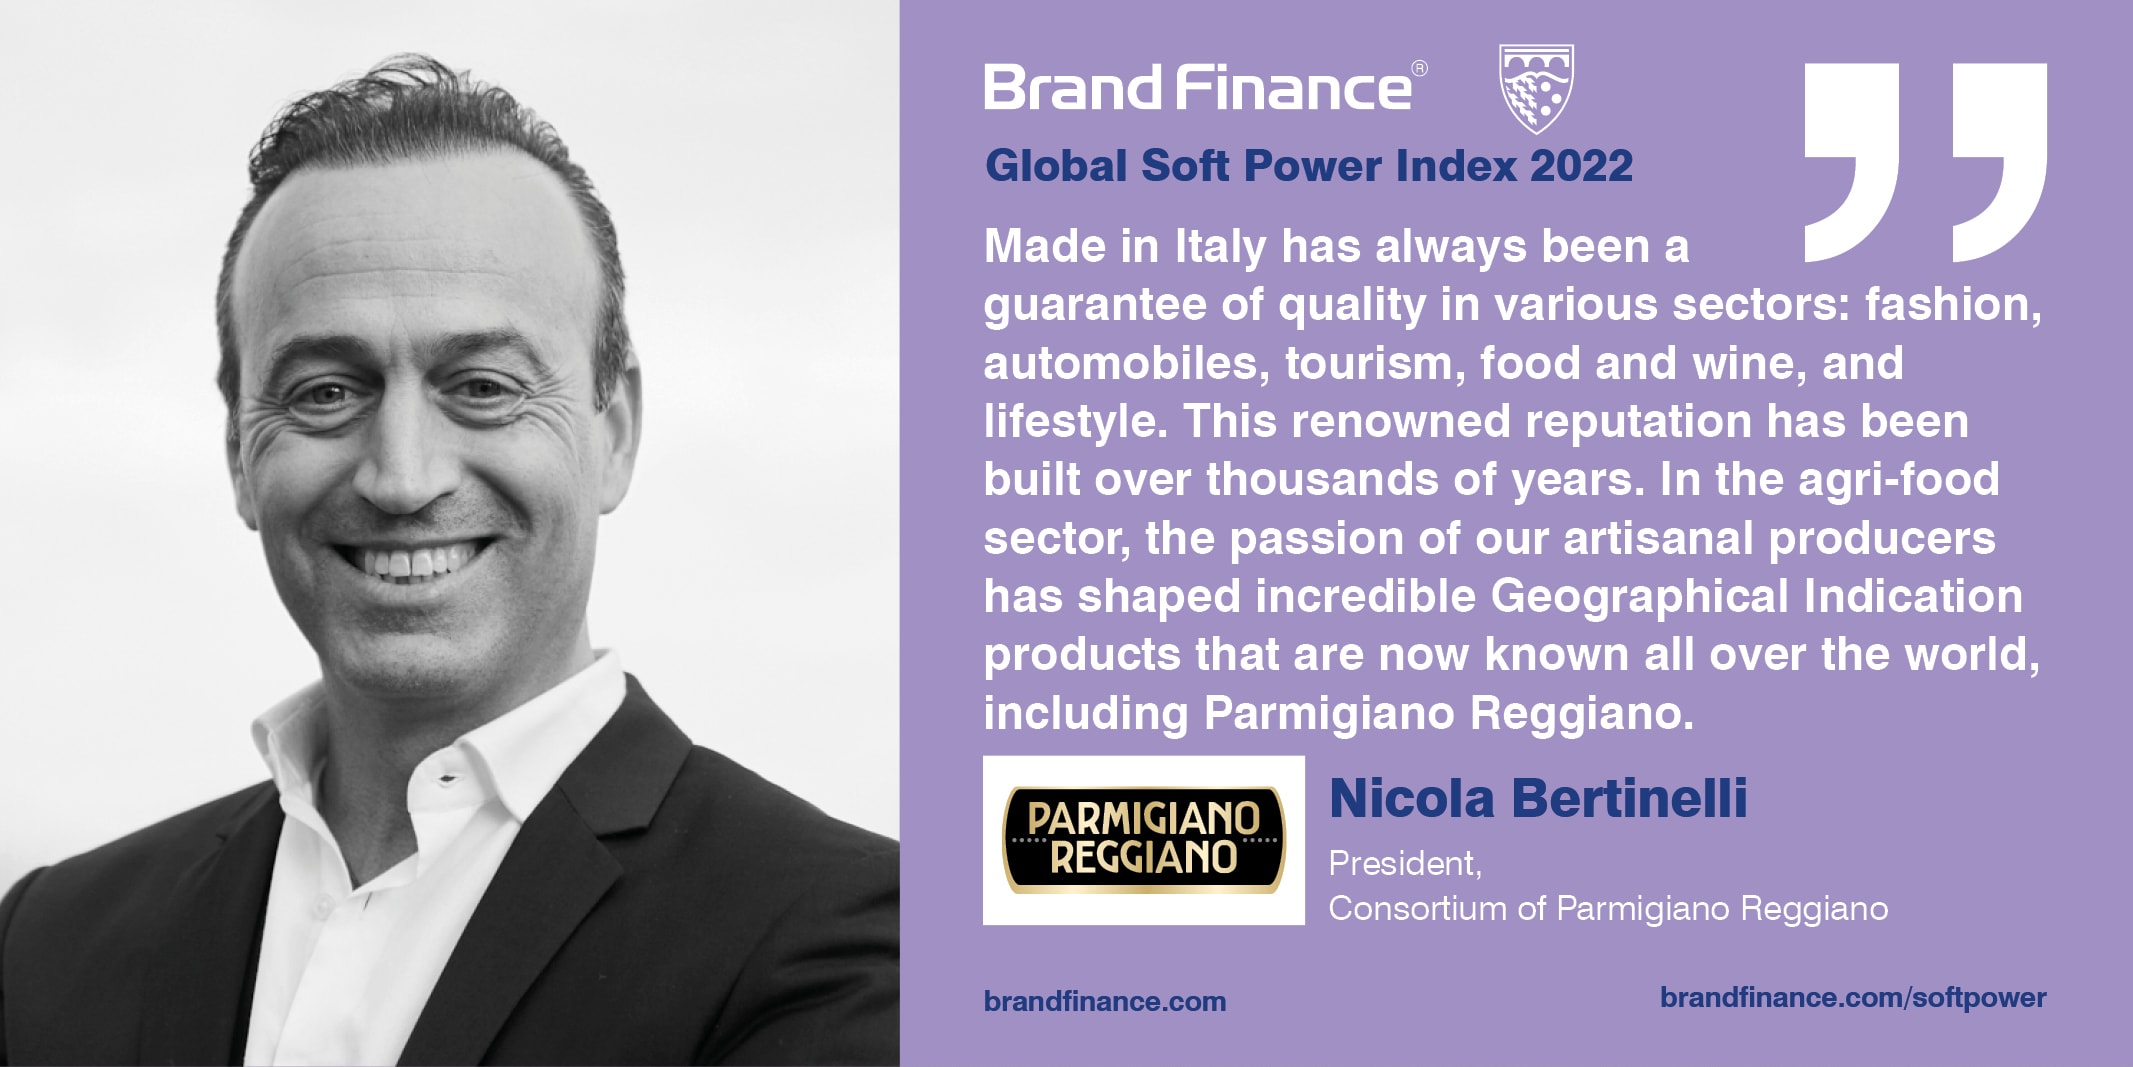 Nicola Bertinelli, President, Consortium of Parmigiano Reggiano